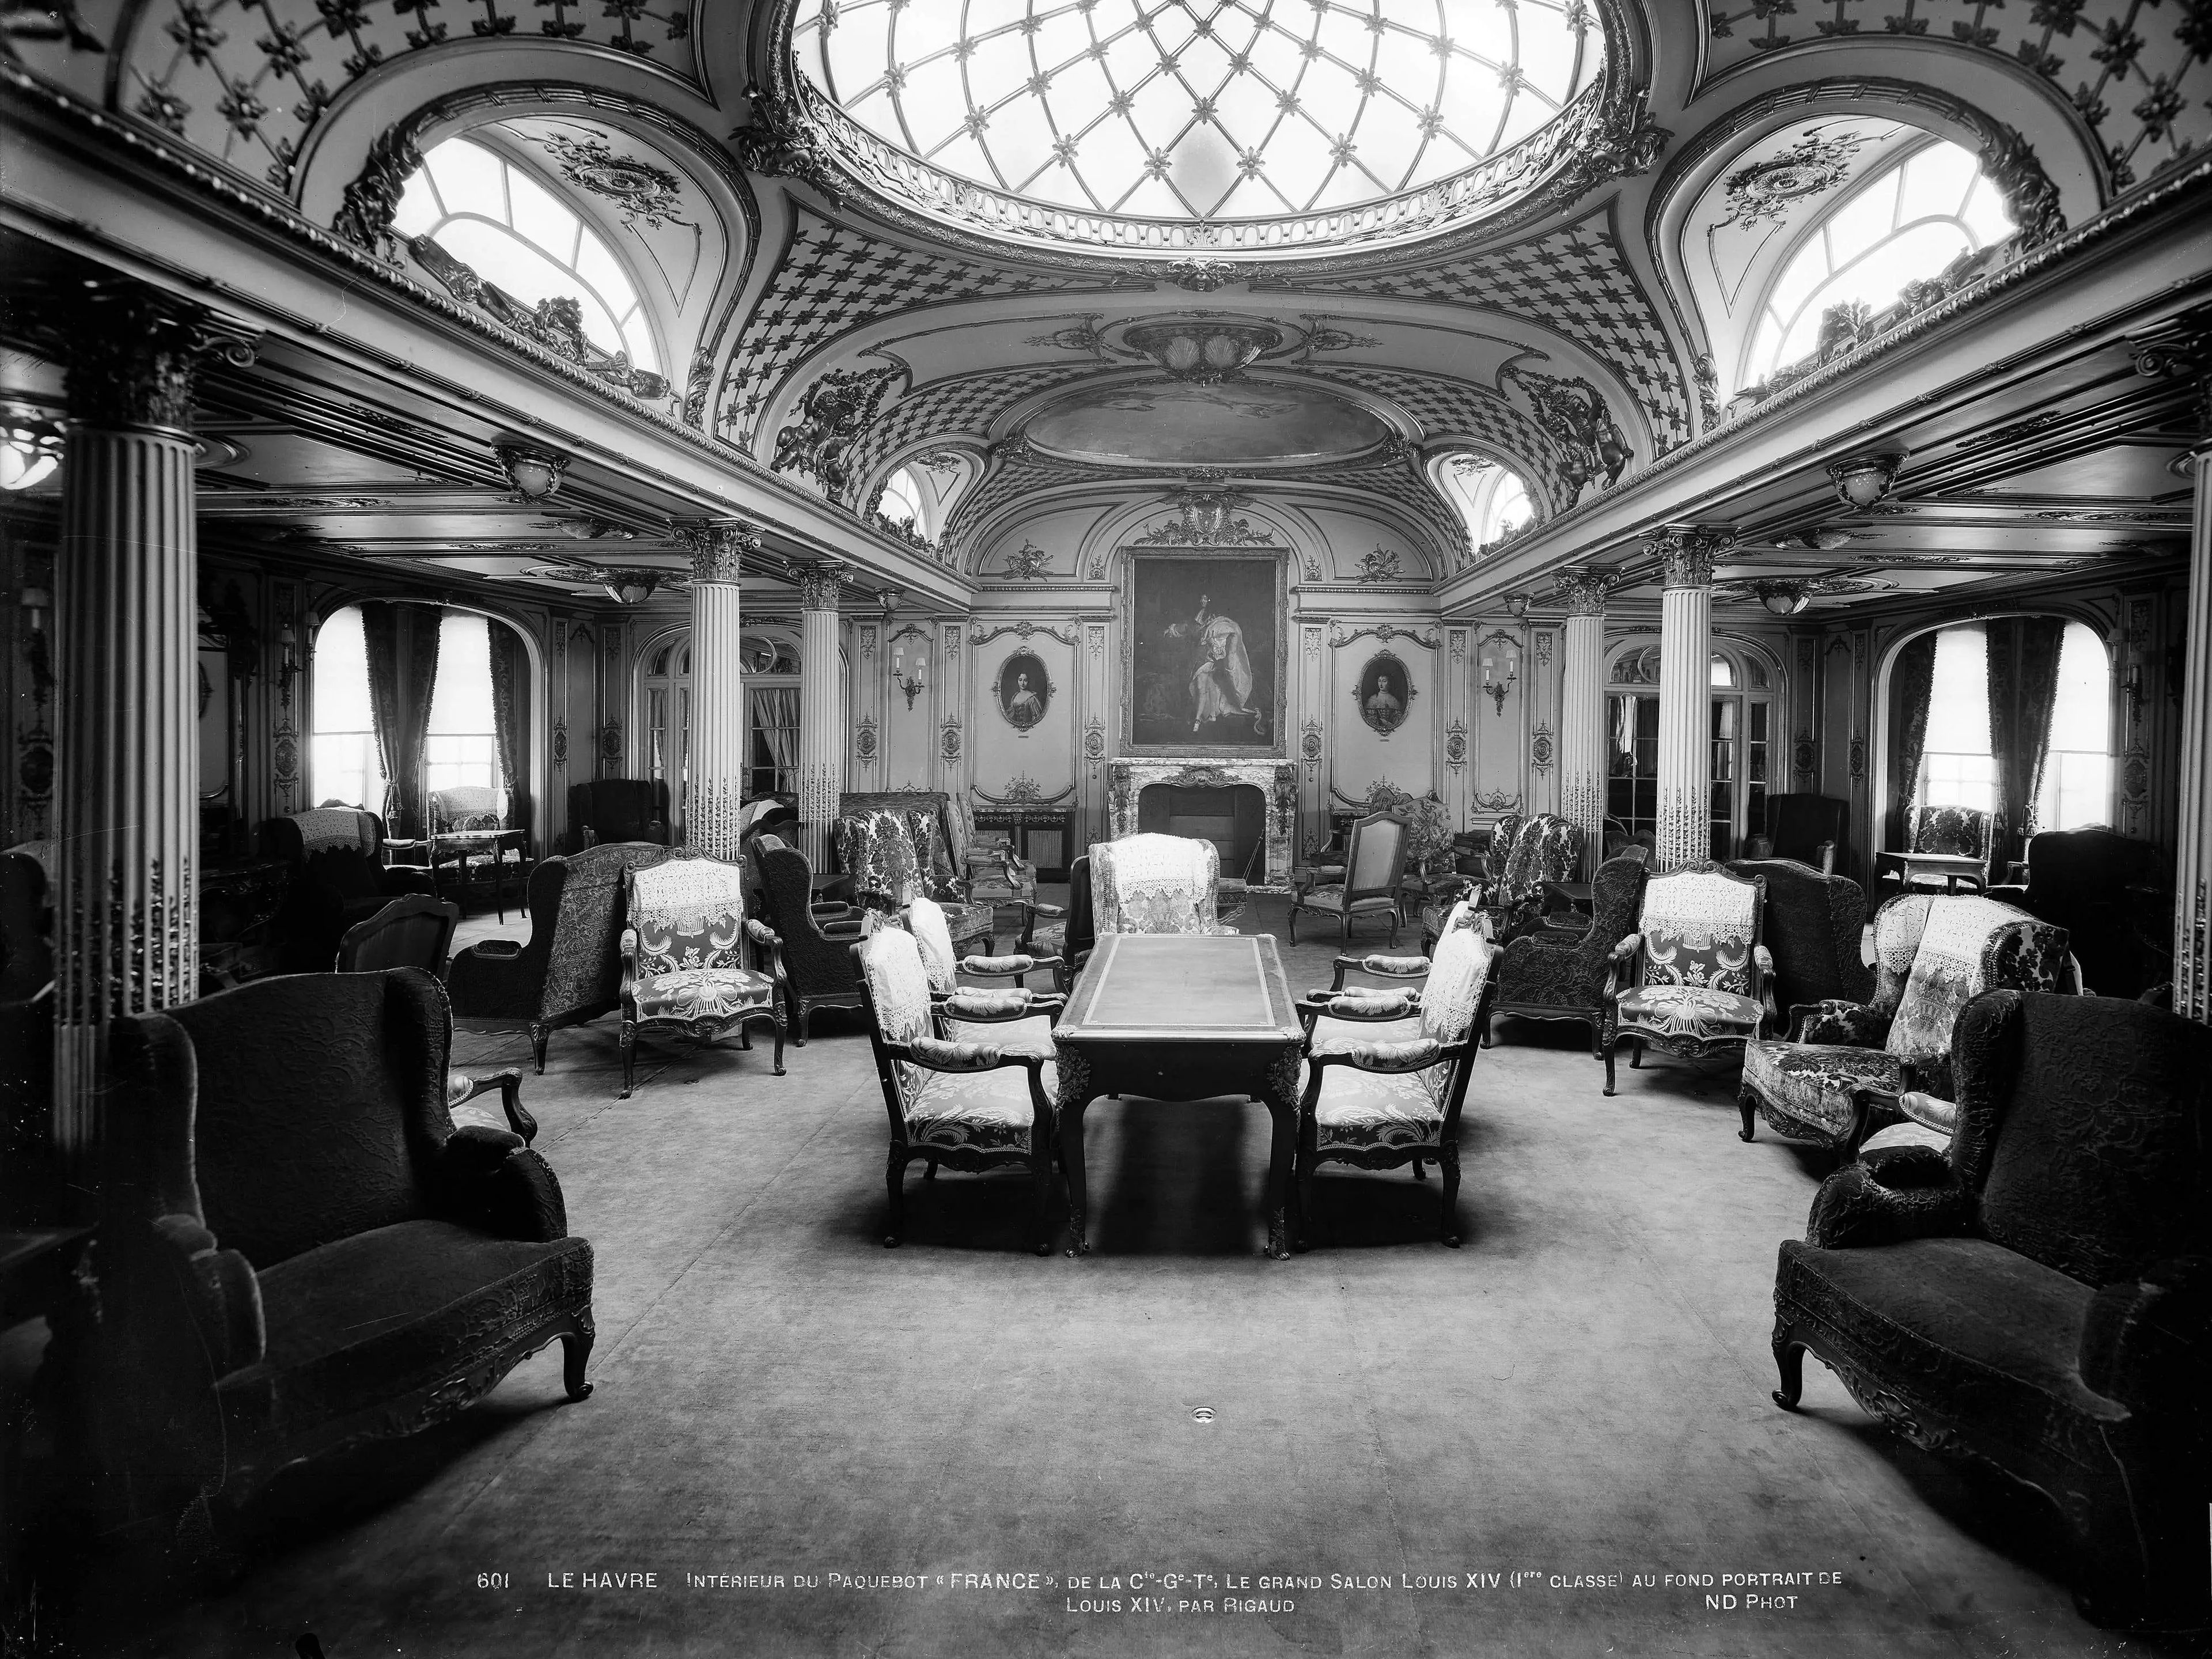 El salón Luis XIV en la sección de primera clase del SS France.